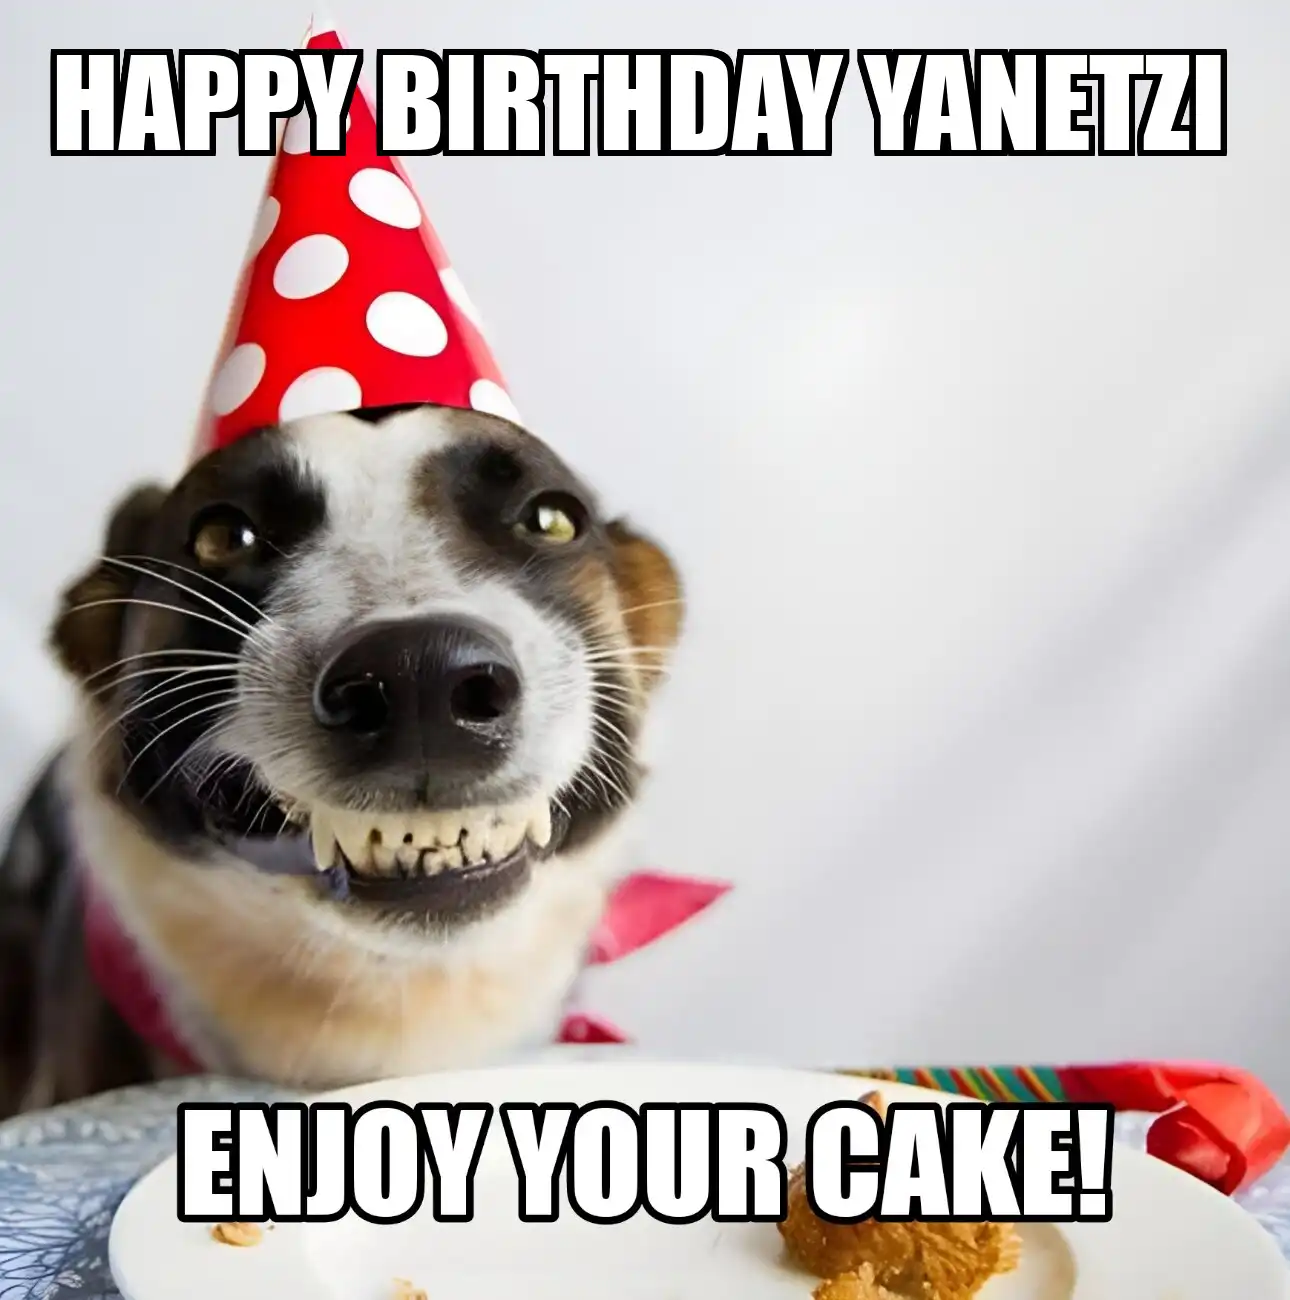 Happy Birthday Yanetzi Enjoy Your Cake Dog Meme